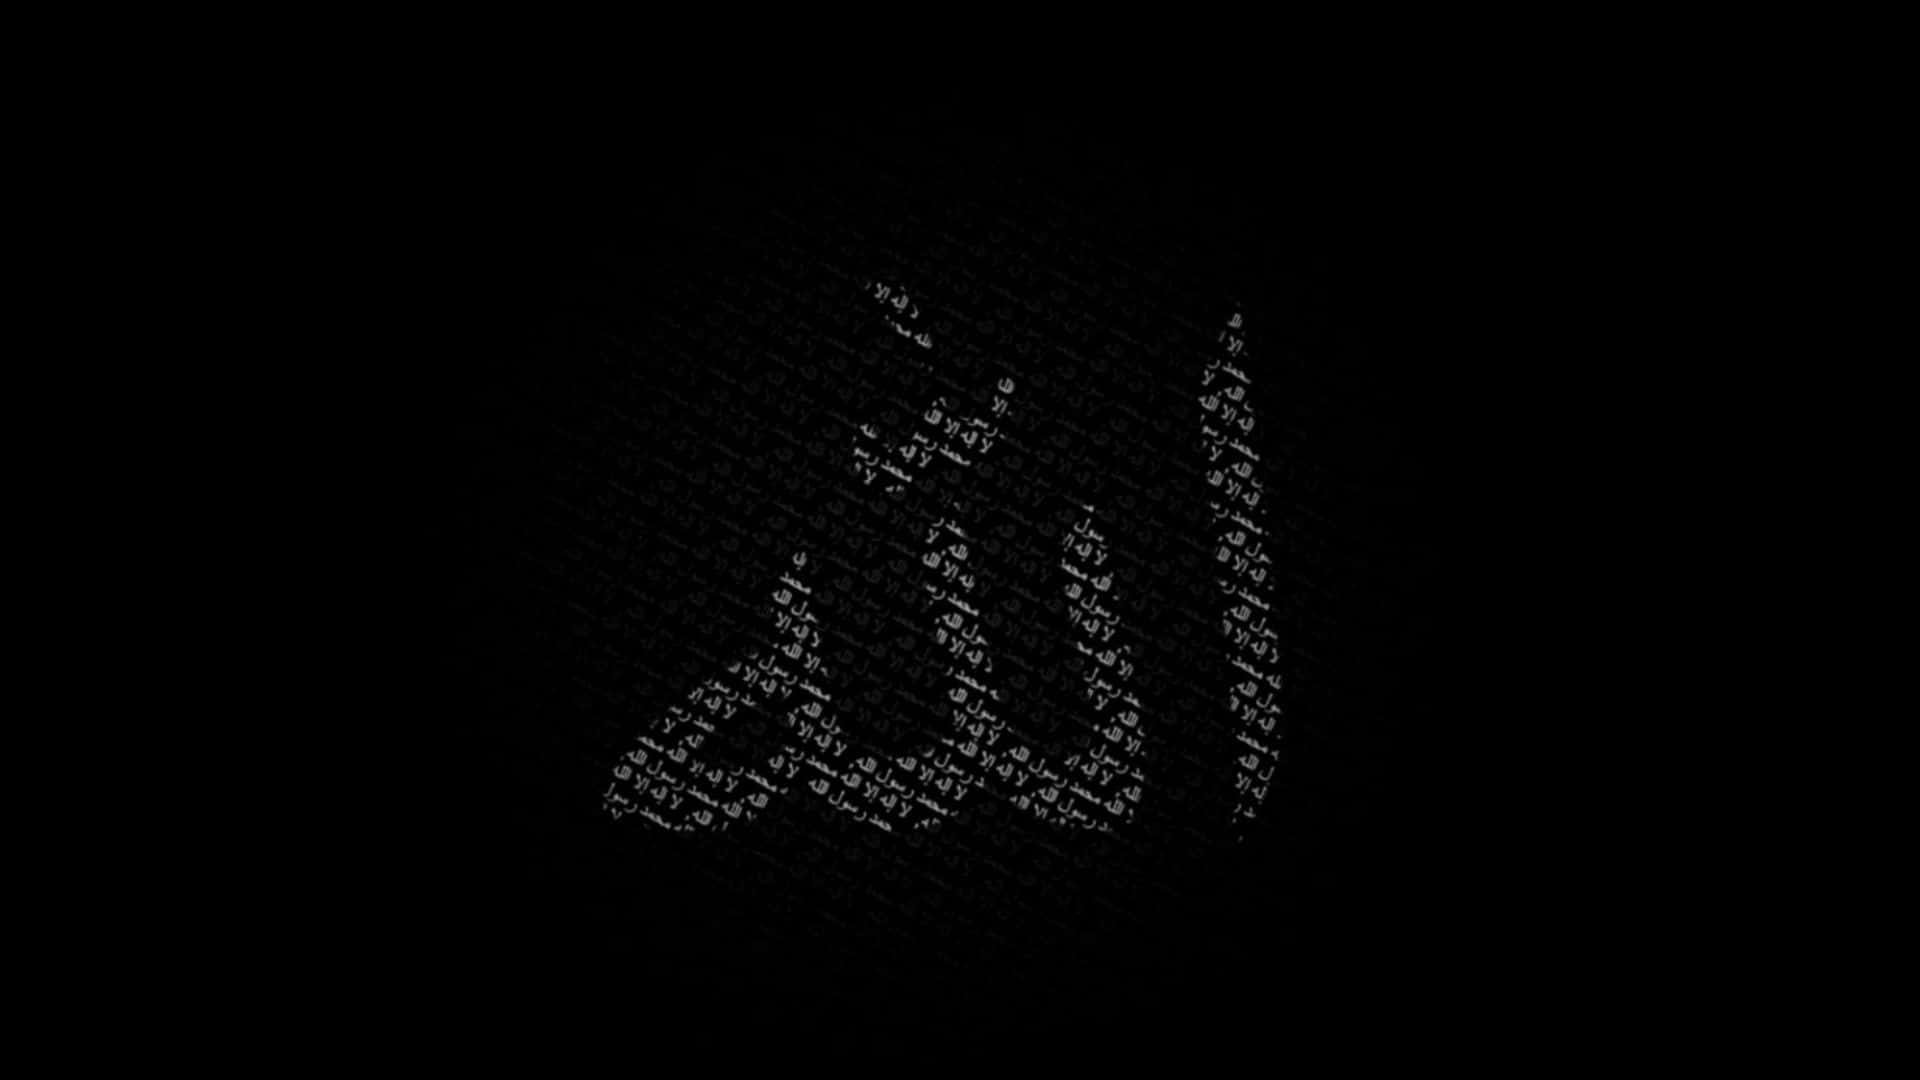 Einevisuelle Darstellung Des Göttlichen Namens Allah.